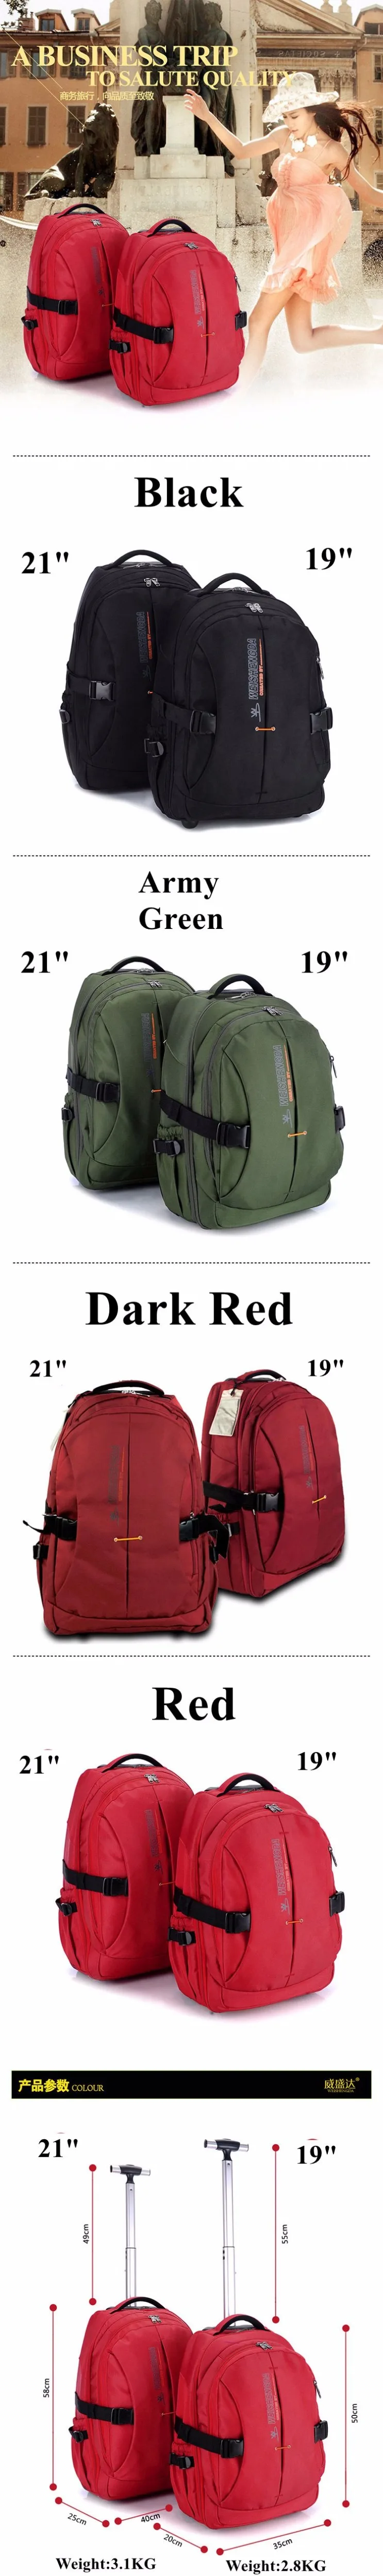 Колесных рюкзаки на колесиках водостойкие путешествия багажные сумки-тележки для женщин мужчин бизнес сумка чемодан дорожные сумки на